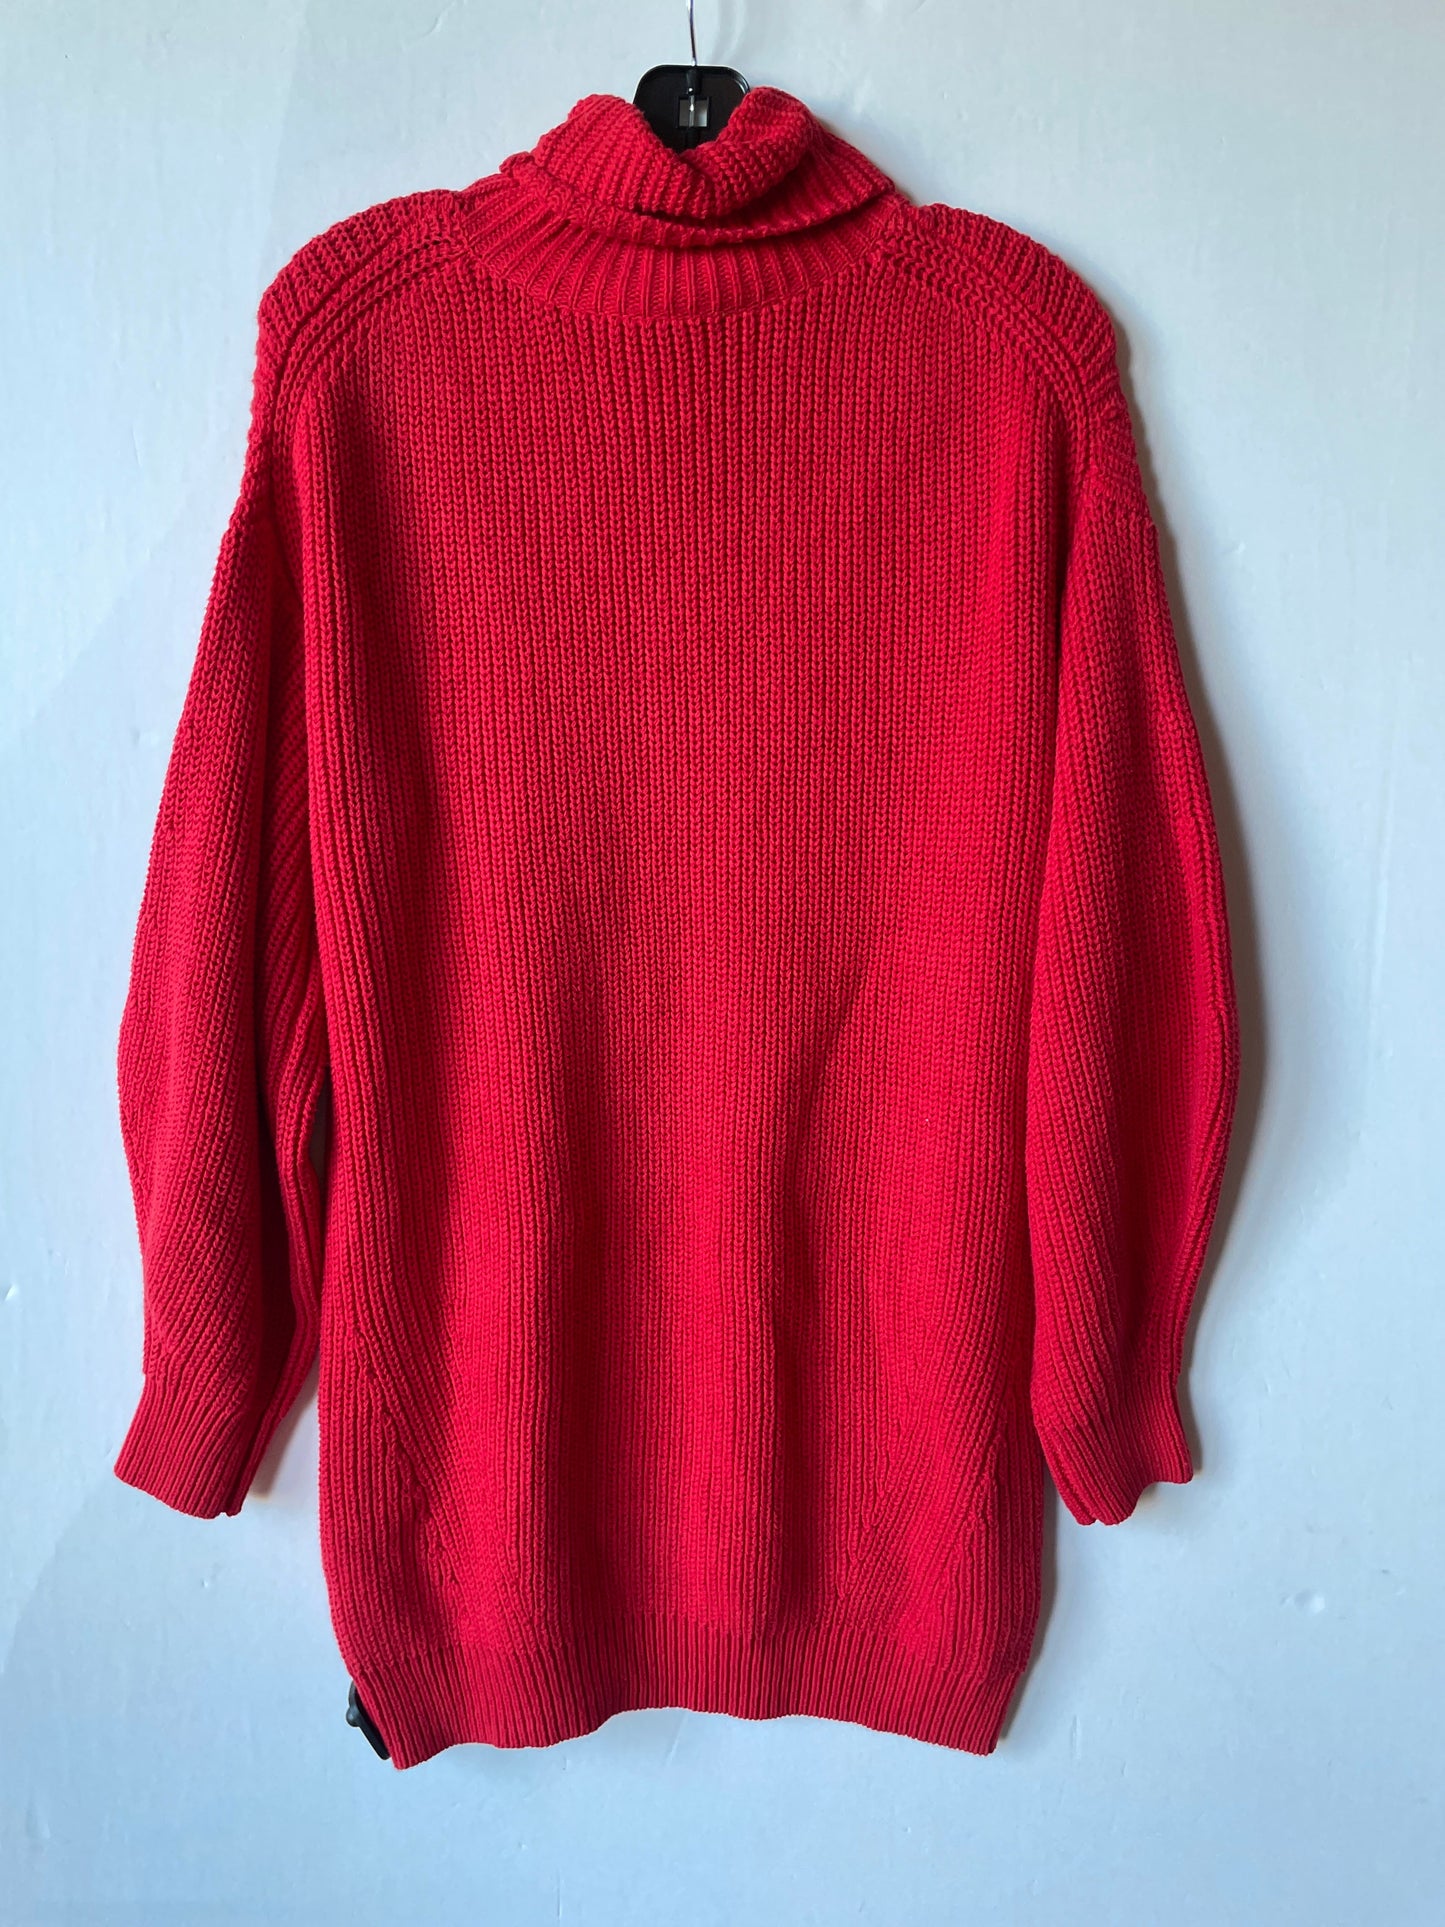 Sweater By Gianni Bini  Size: Xs